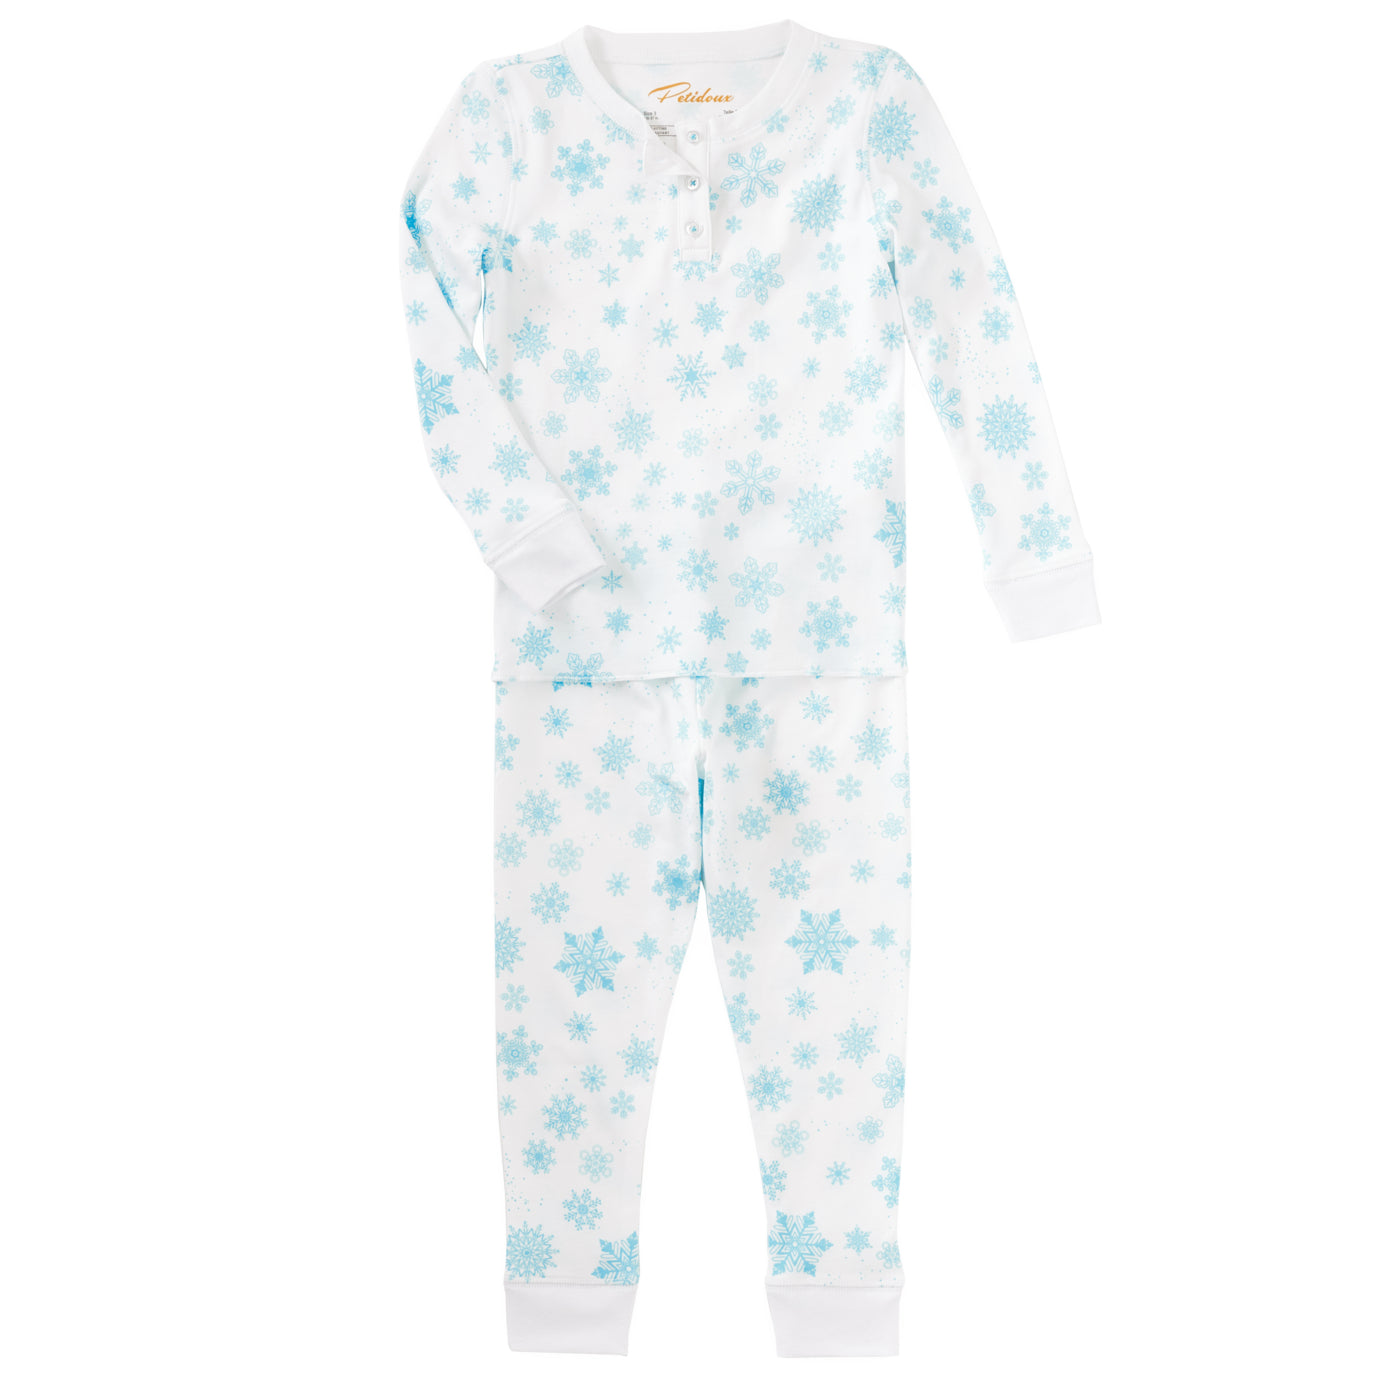 Petidoux Pajama Set - Blue Flurries